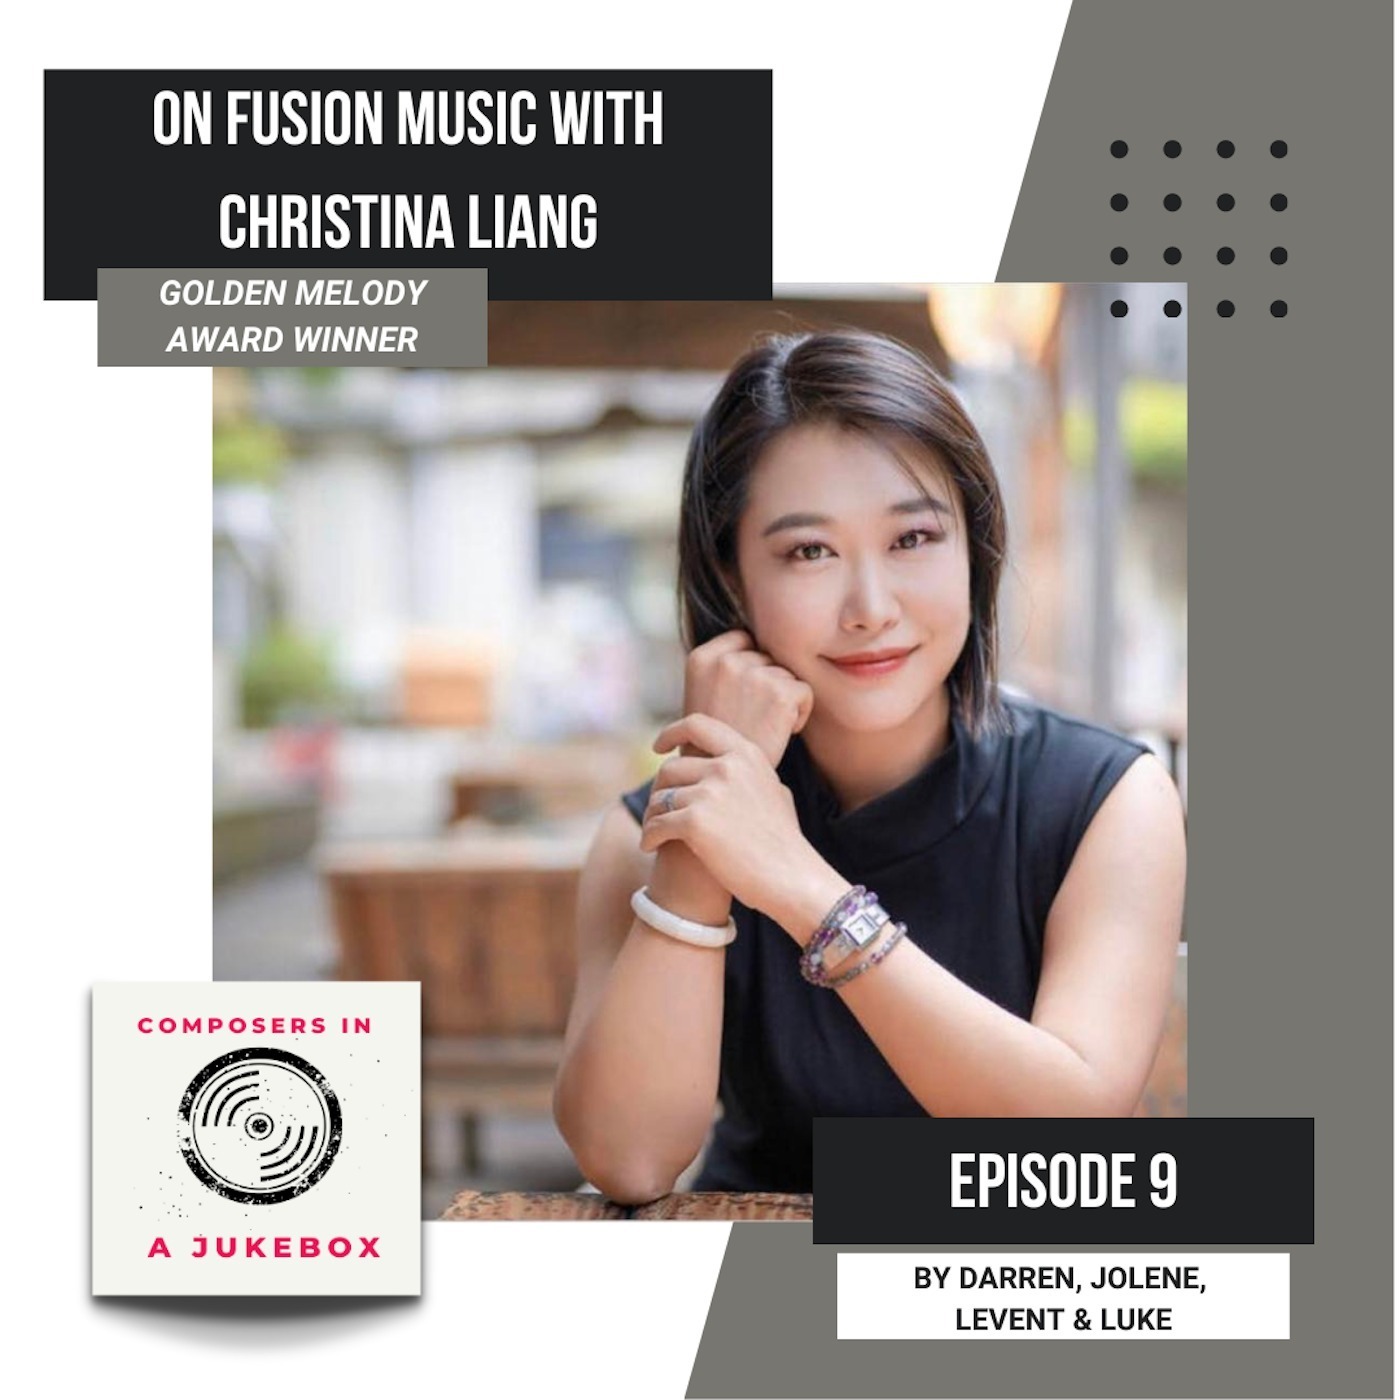 On Fusion Music With Christina Liang